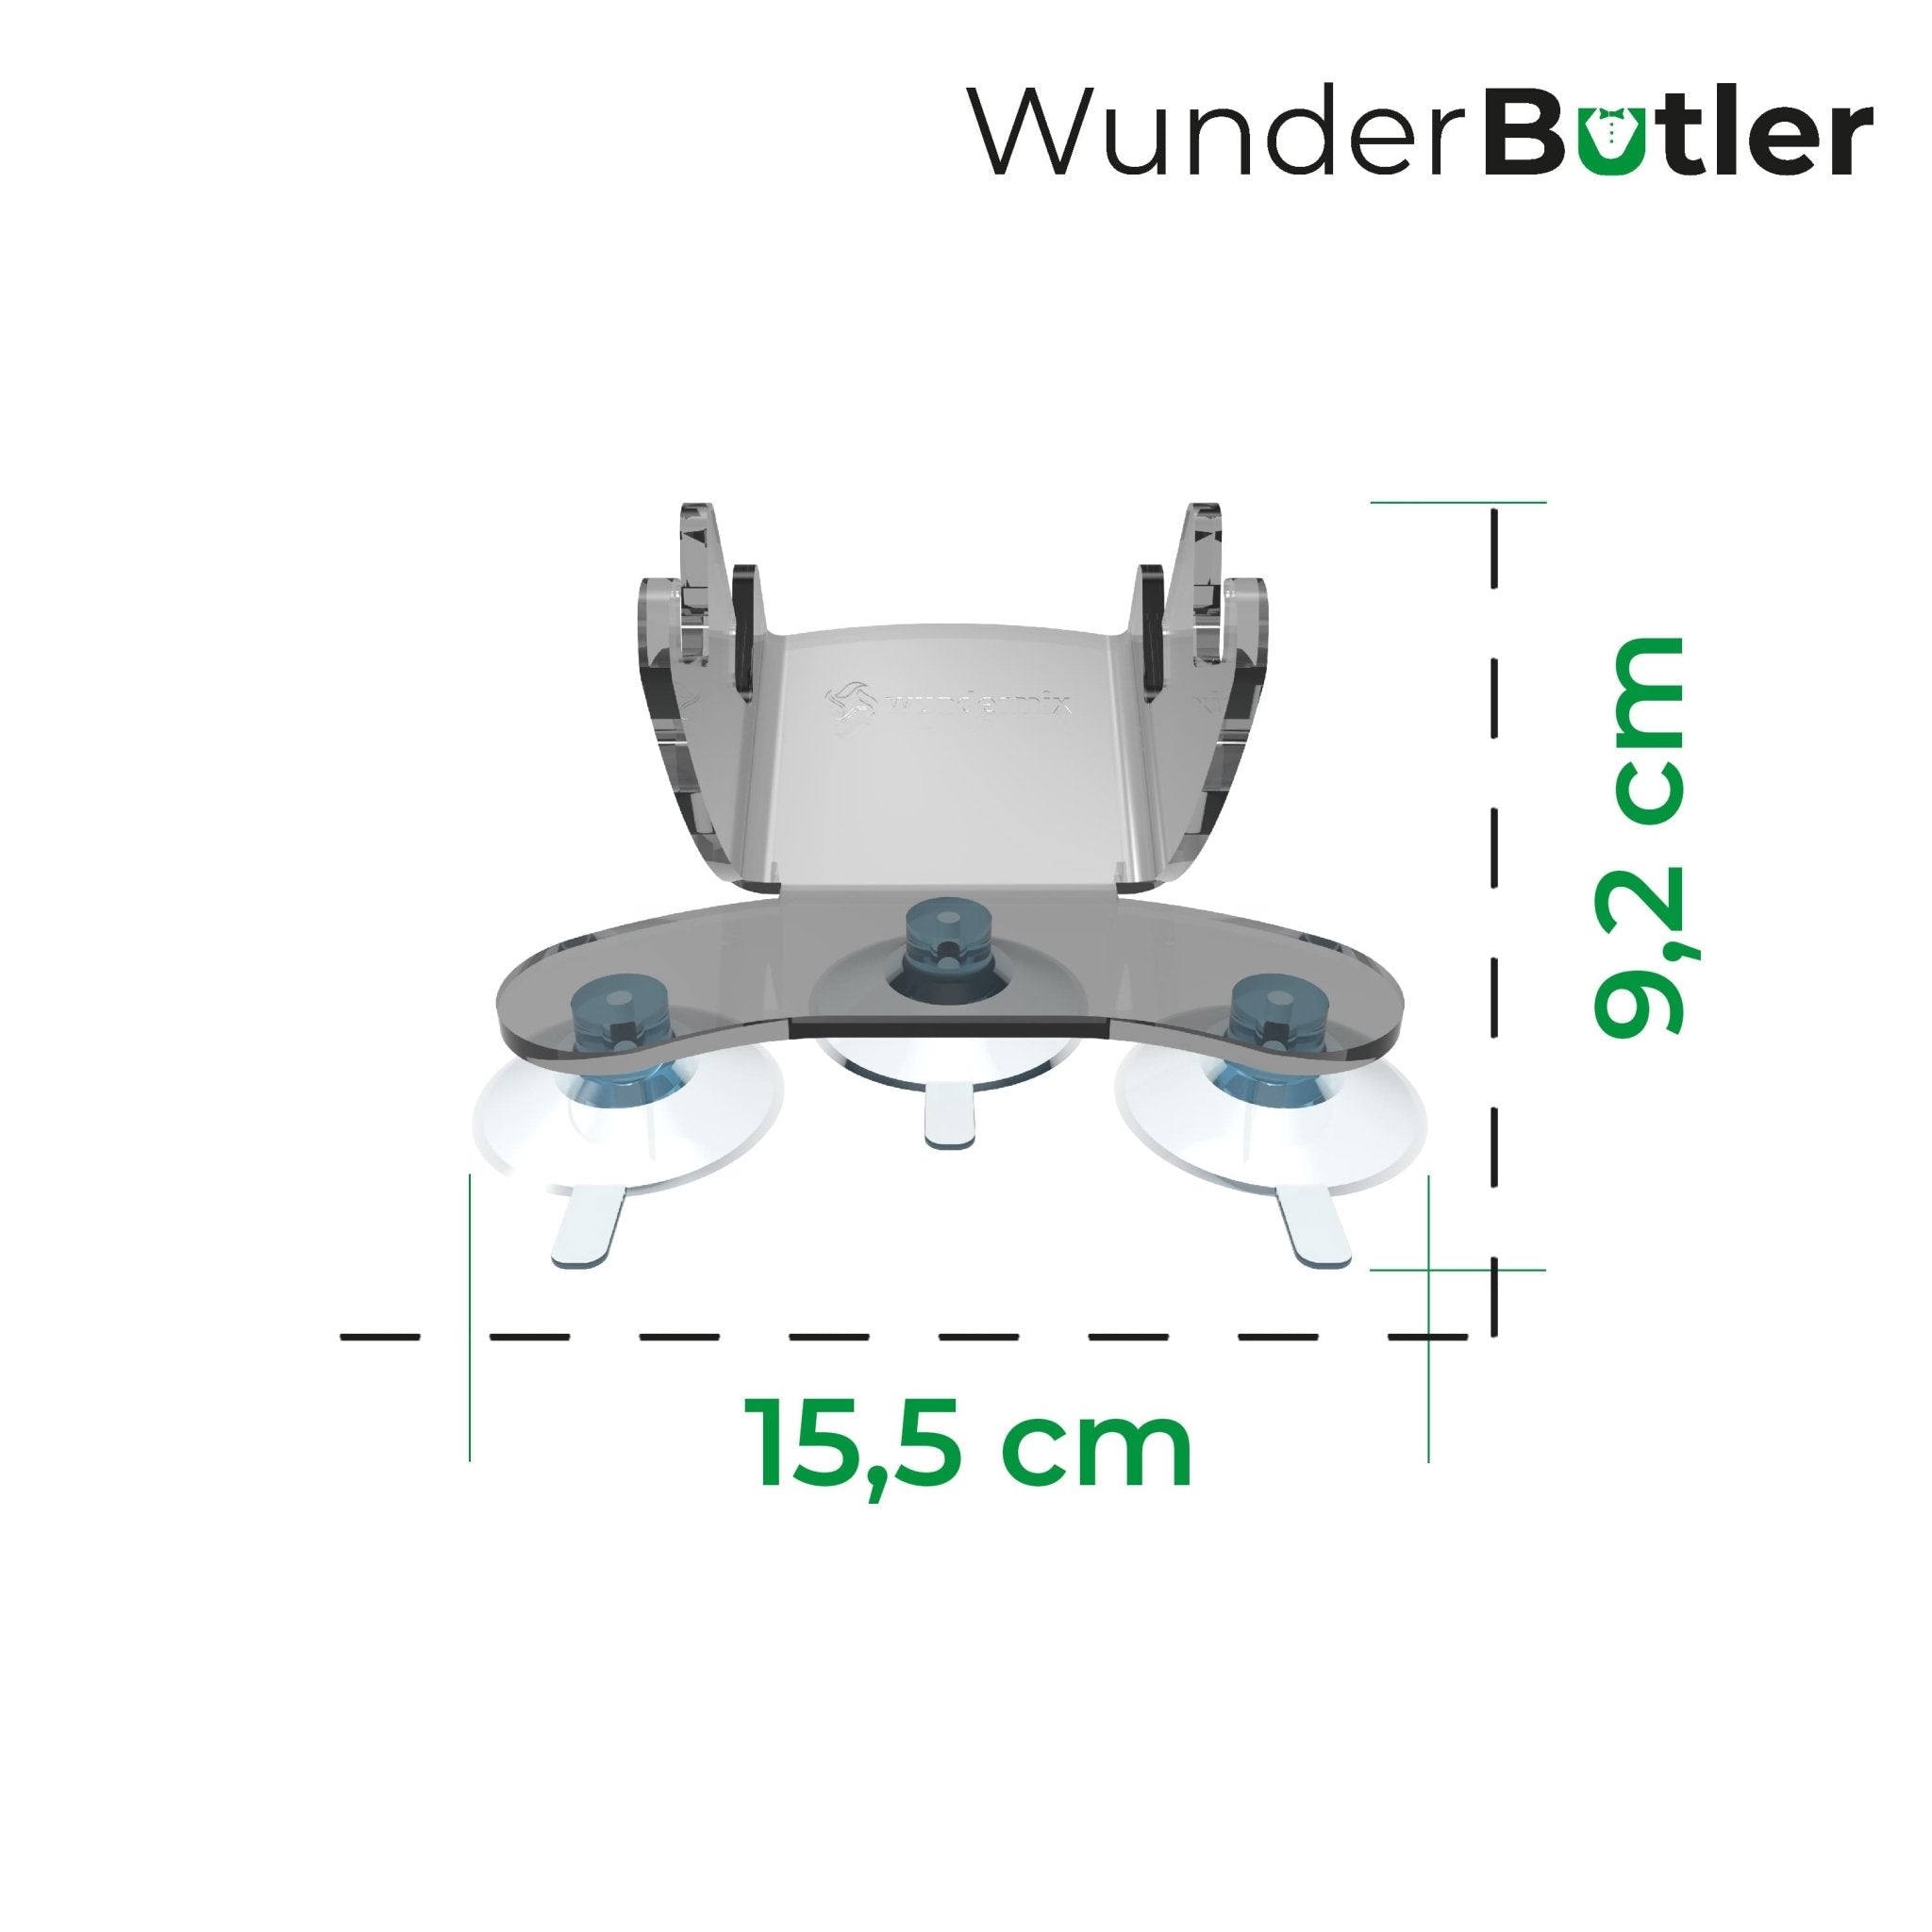 WunderButler® | Deckelhalter für den Monsieur Cuisine - Wundermix GmbH